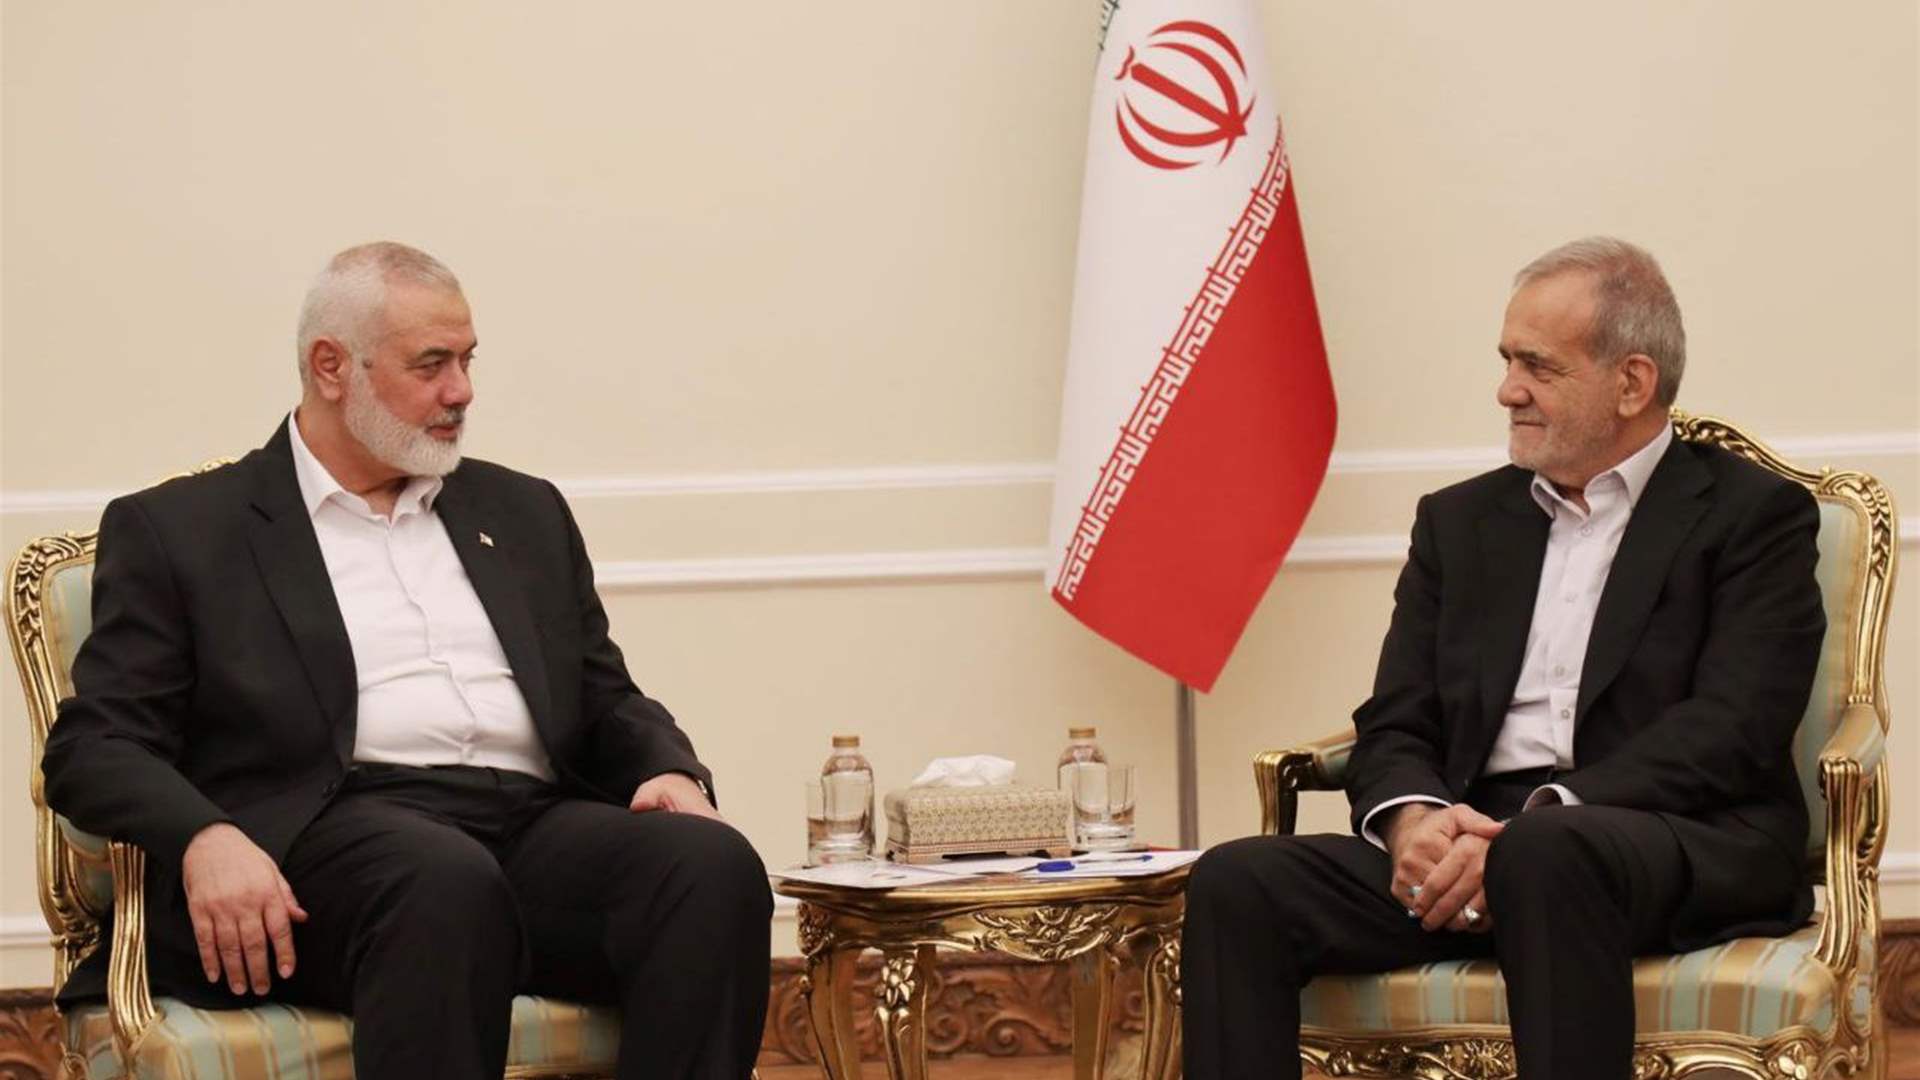  الرئيس الايراني يلتقي هنية والنخالة: سياسات ايران في دعم قضية الدفاع عن المظلومين لن تتغير